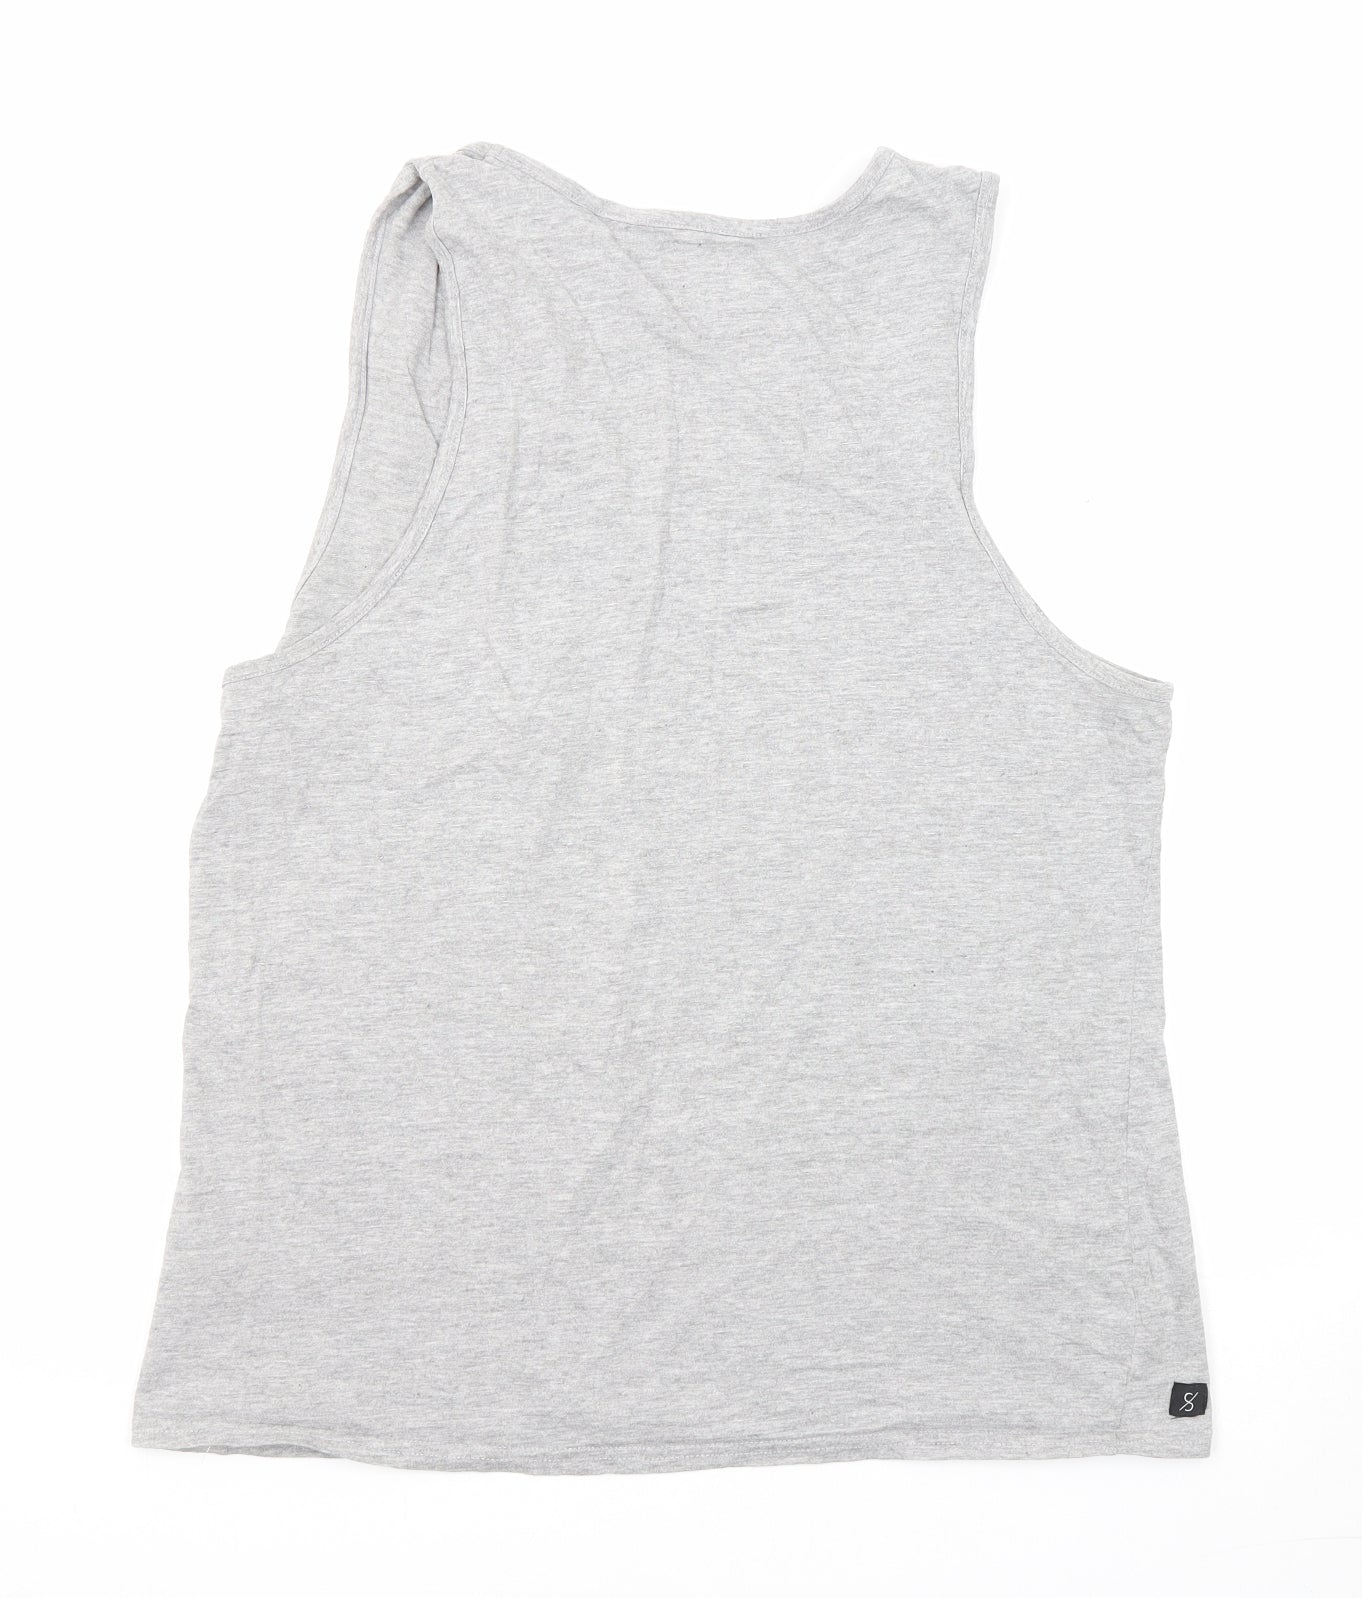 Broken Standard Mens Grey Cotton T-Shirt Size L Round Neck